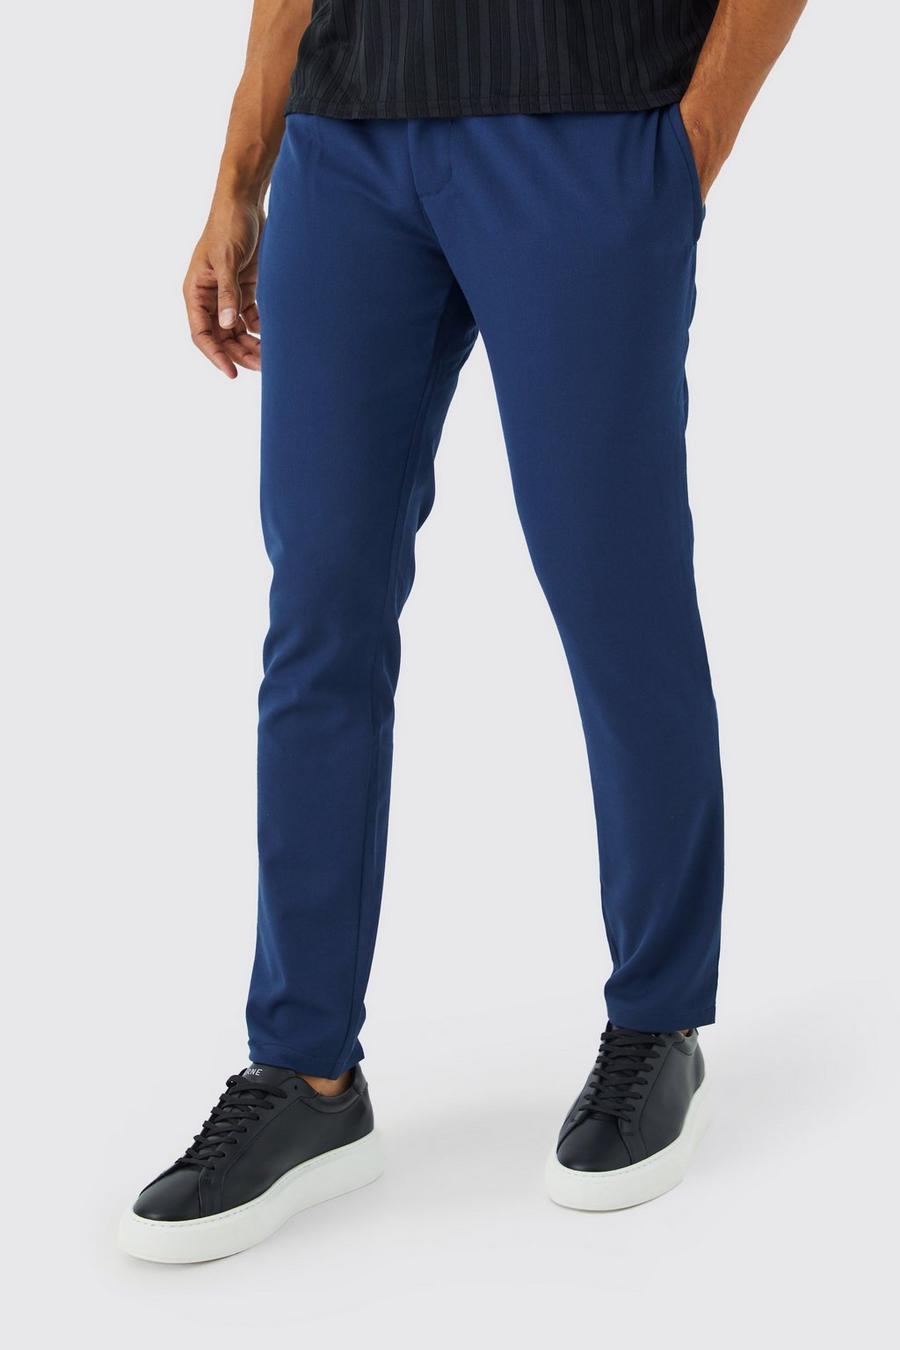 Pantaloni Slim Fit in Stretch comodo con laccetti, Navy azul marino